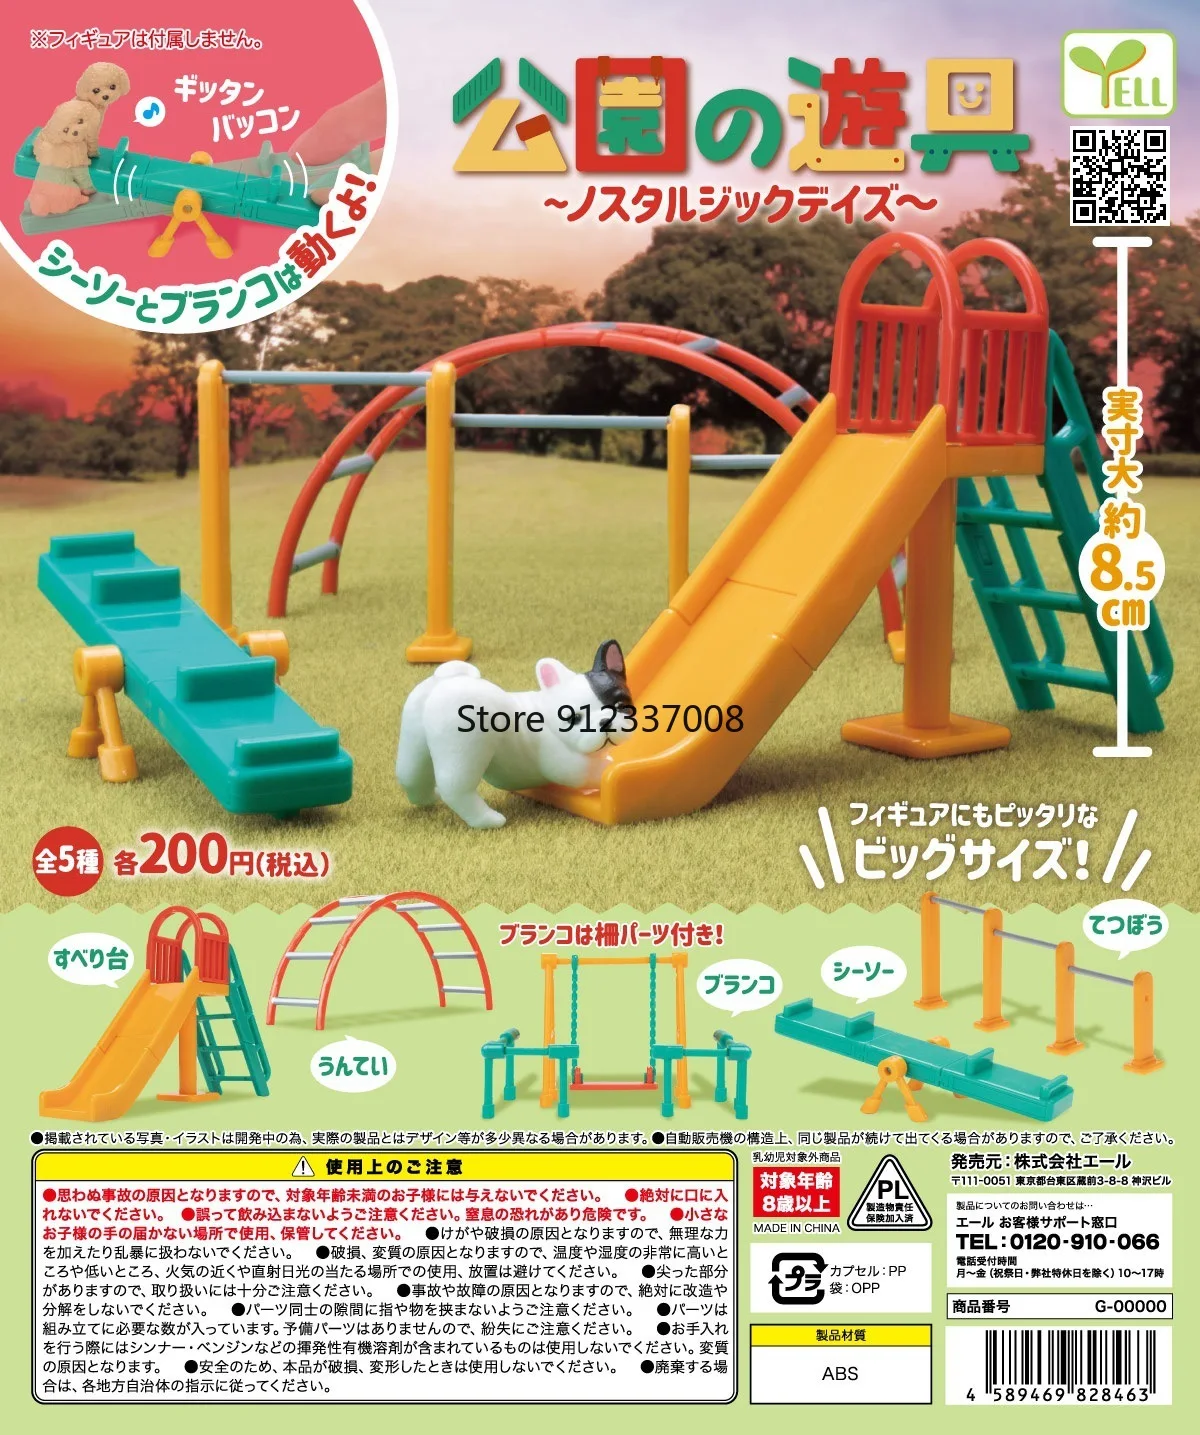 

Yell Japan Genuine Gashapon Capsule Toy Gacha Figurine Children's Park Equipment Miniature